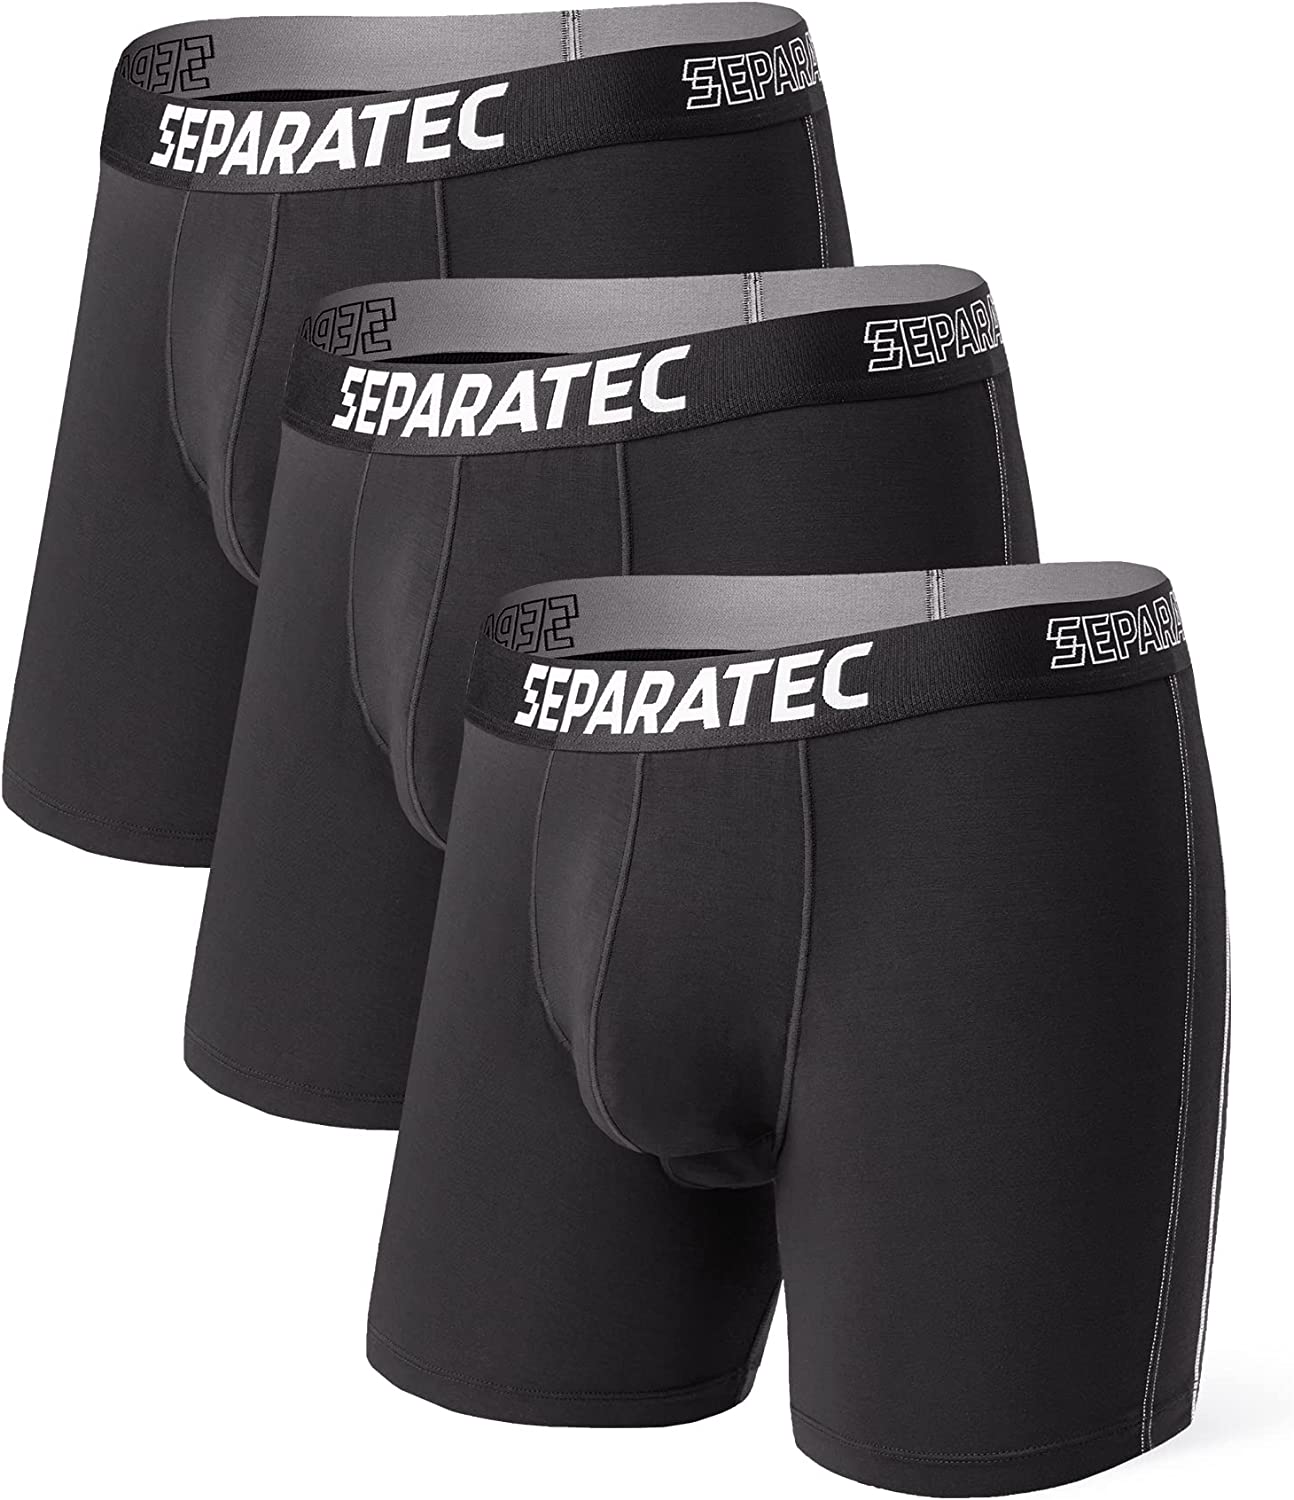 Separatec Underwear - After waking up Put on Separatec underwear